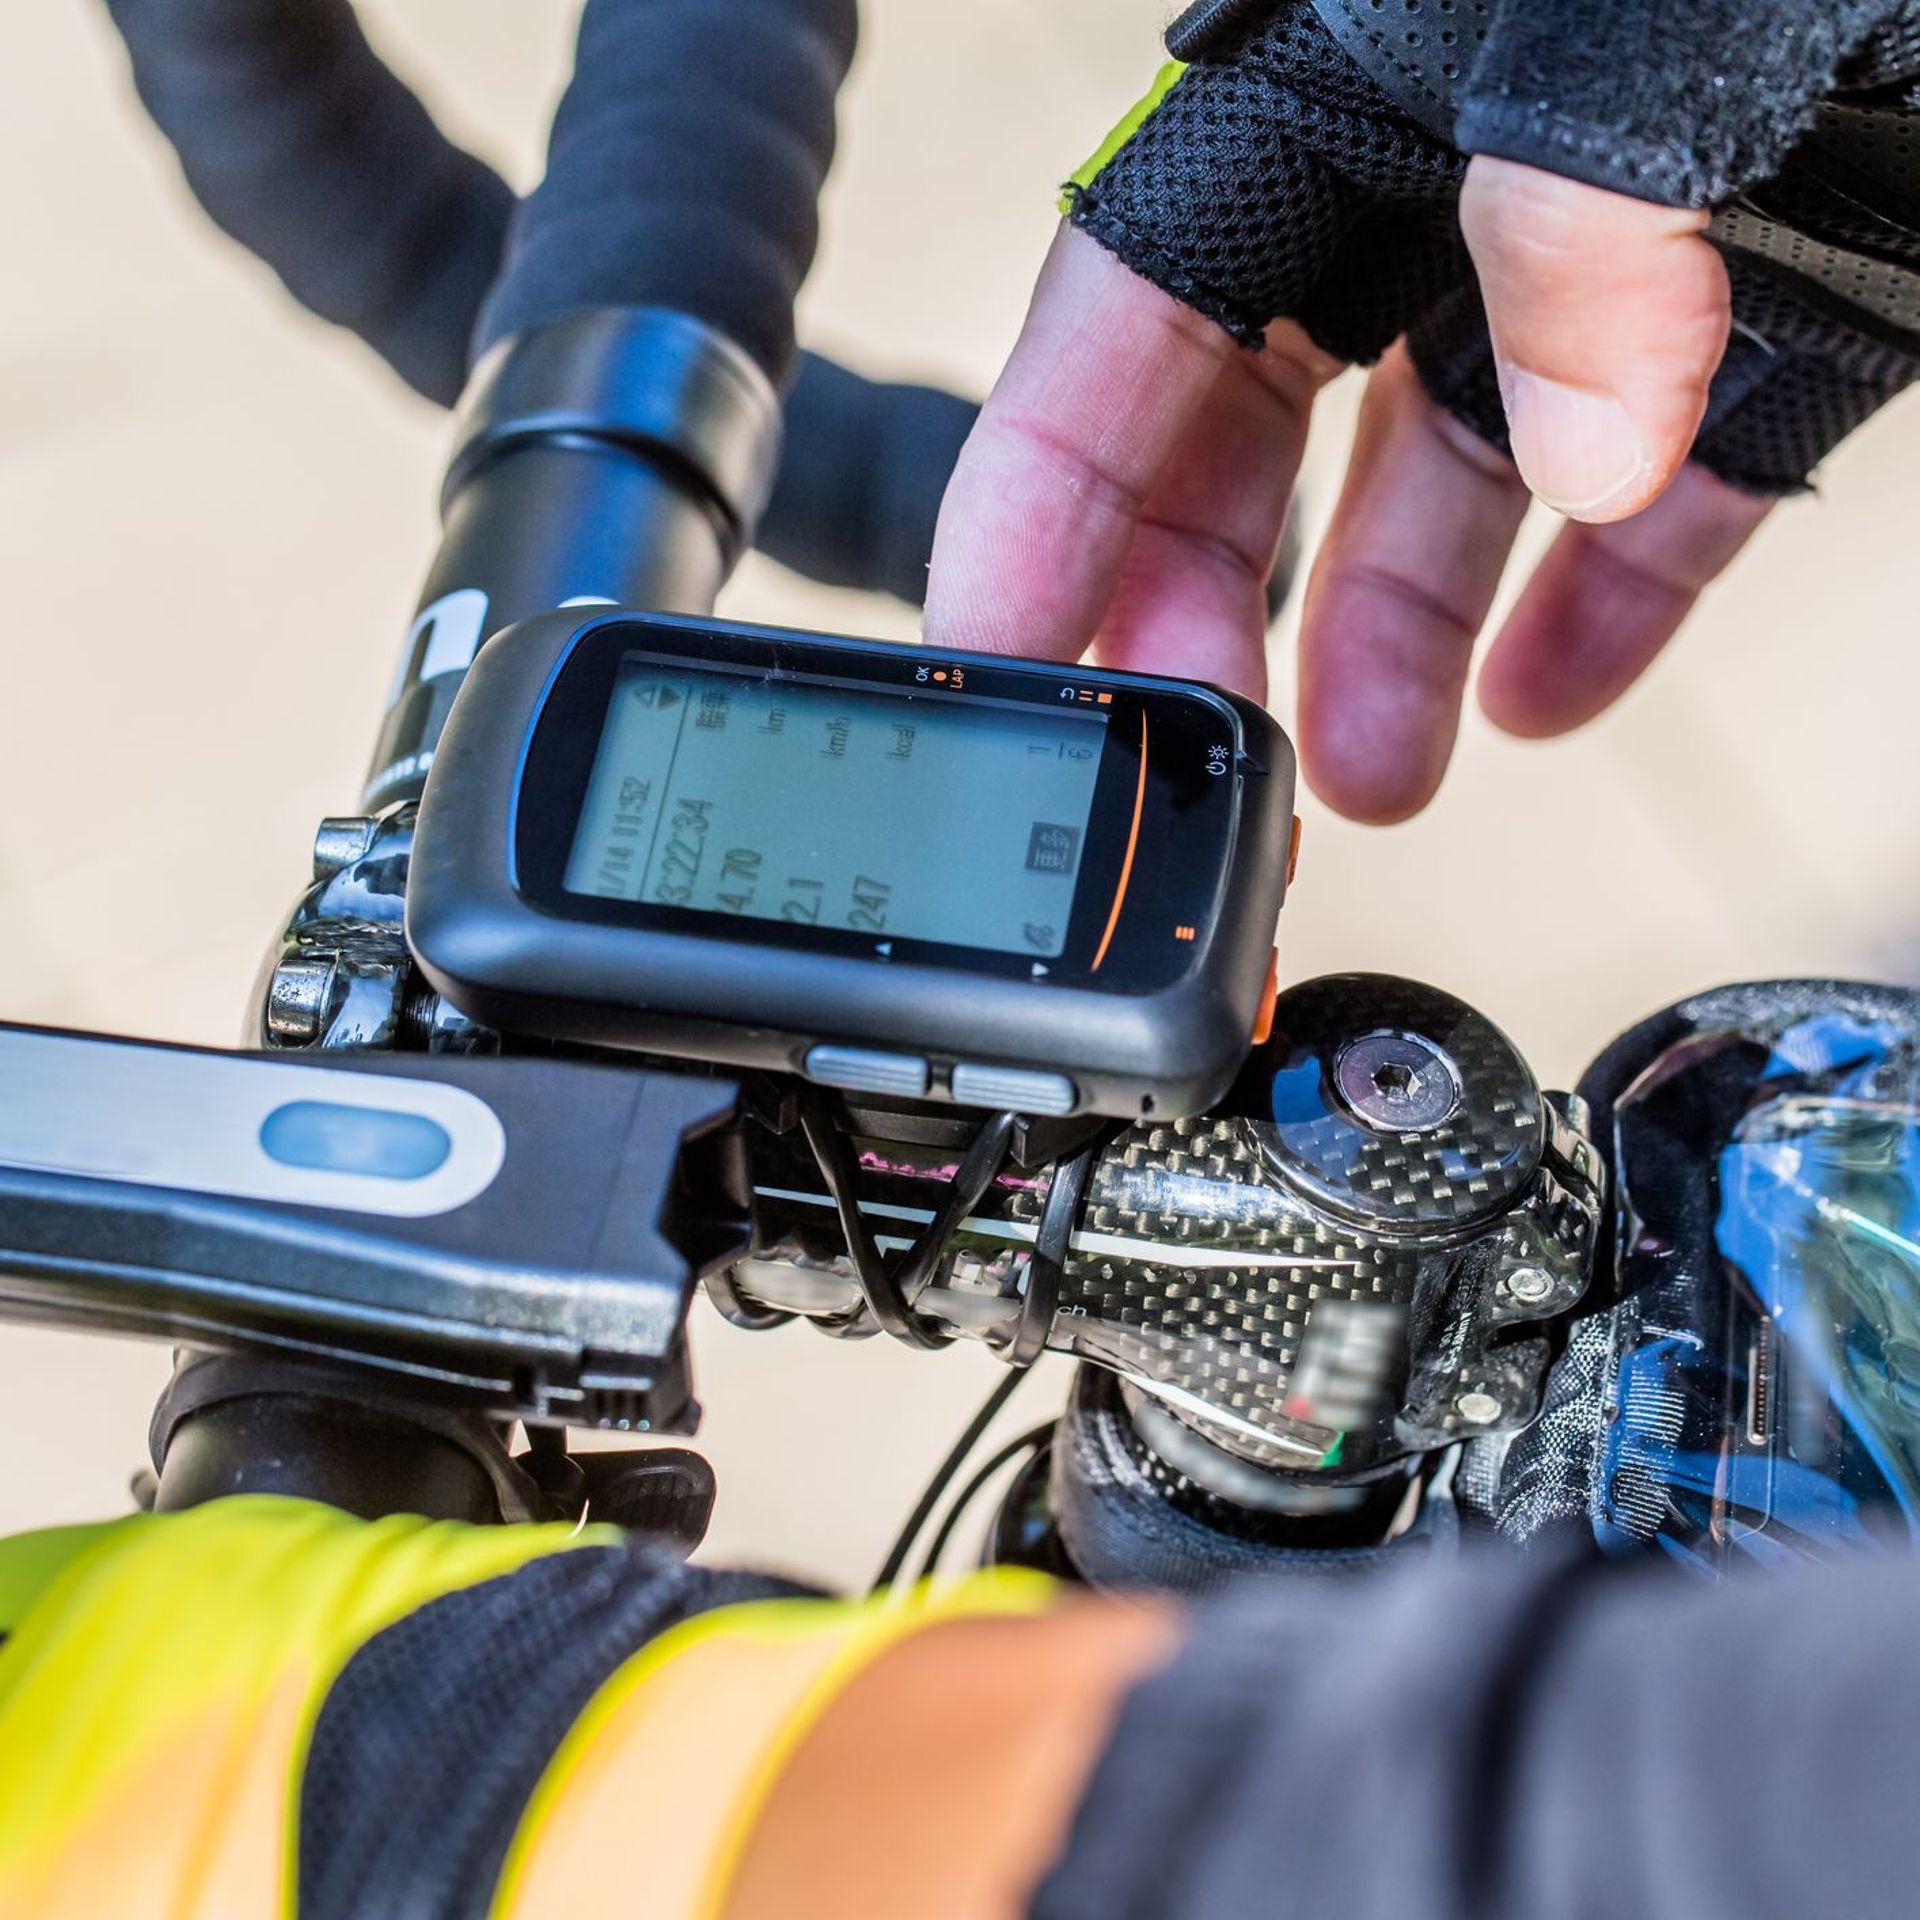 Comment choisir un bon traceur GPS pour son vélo ? 